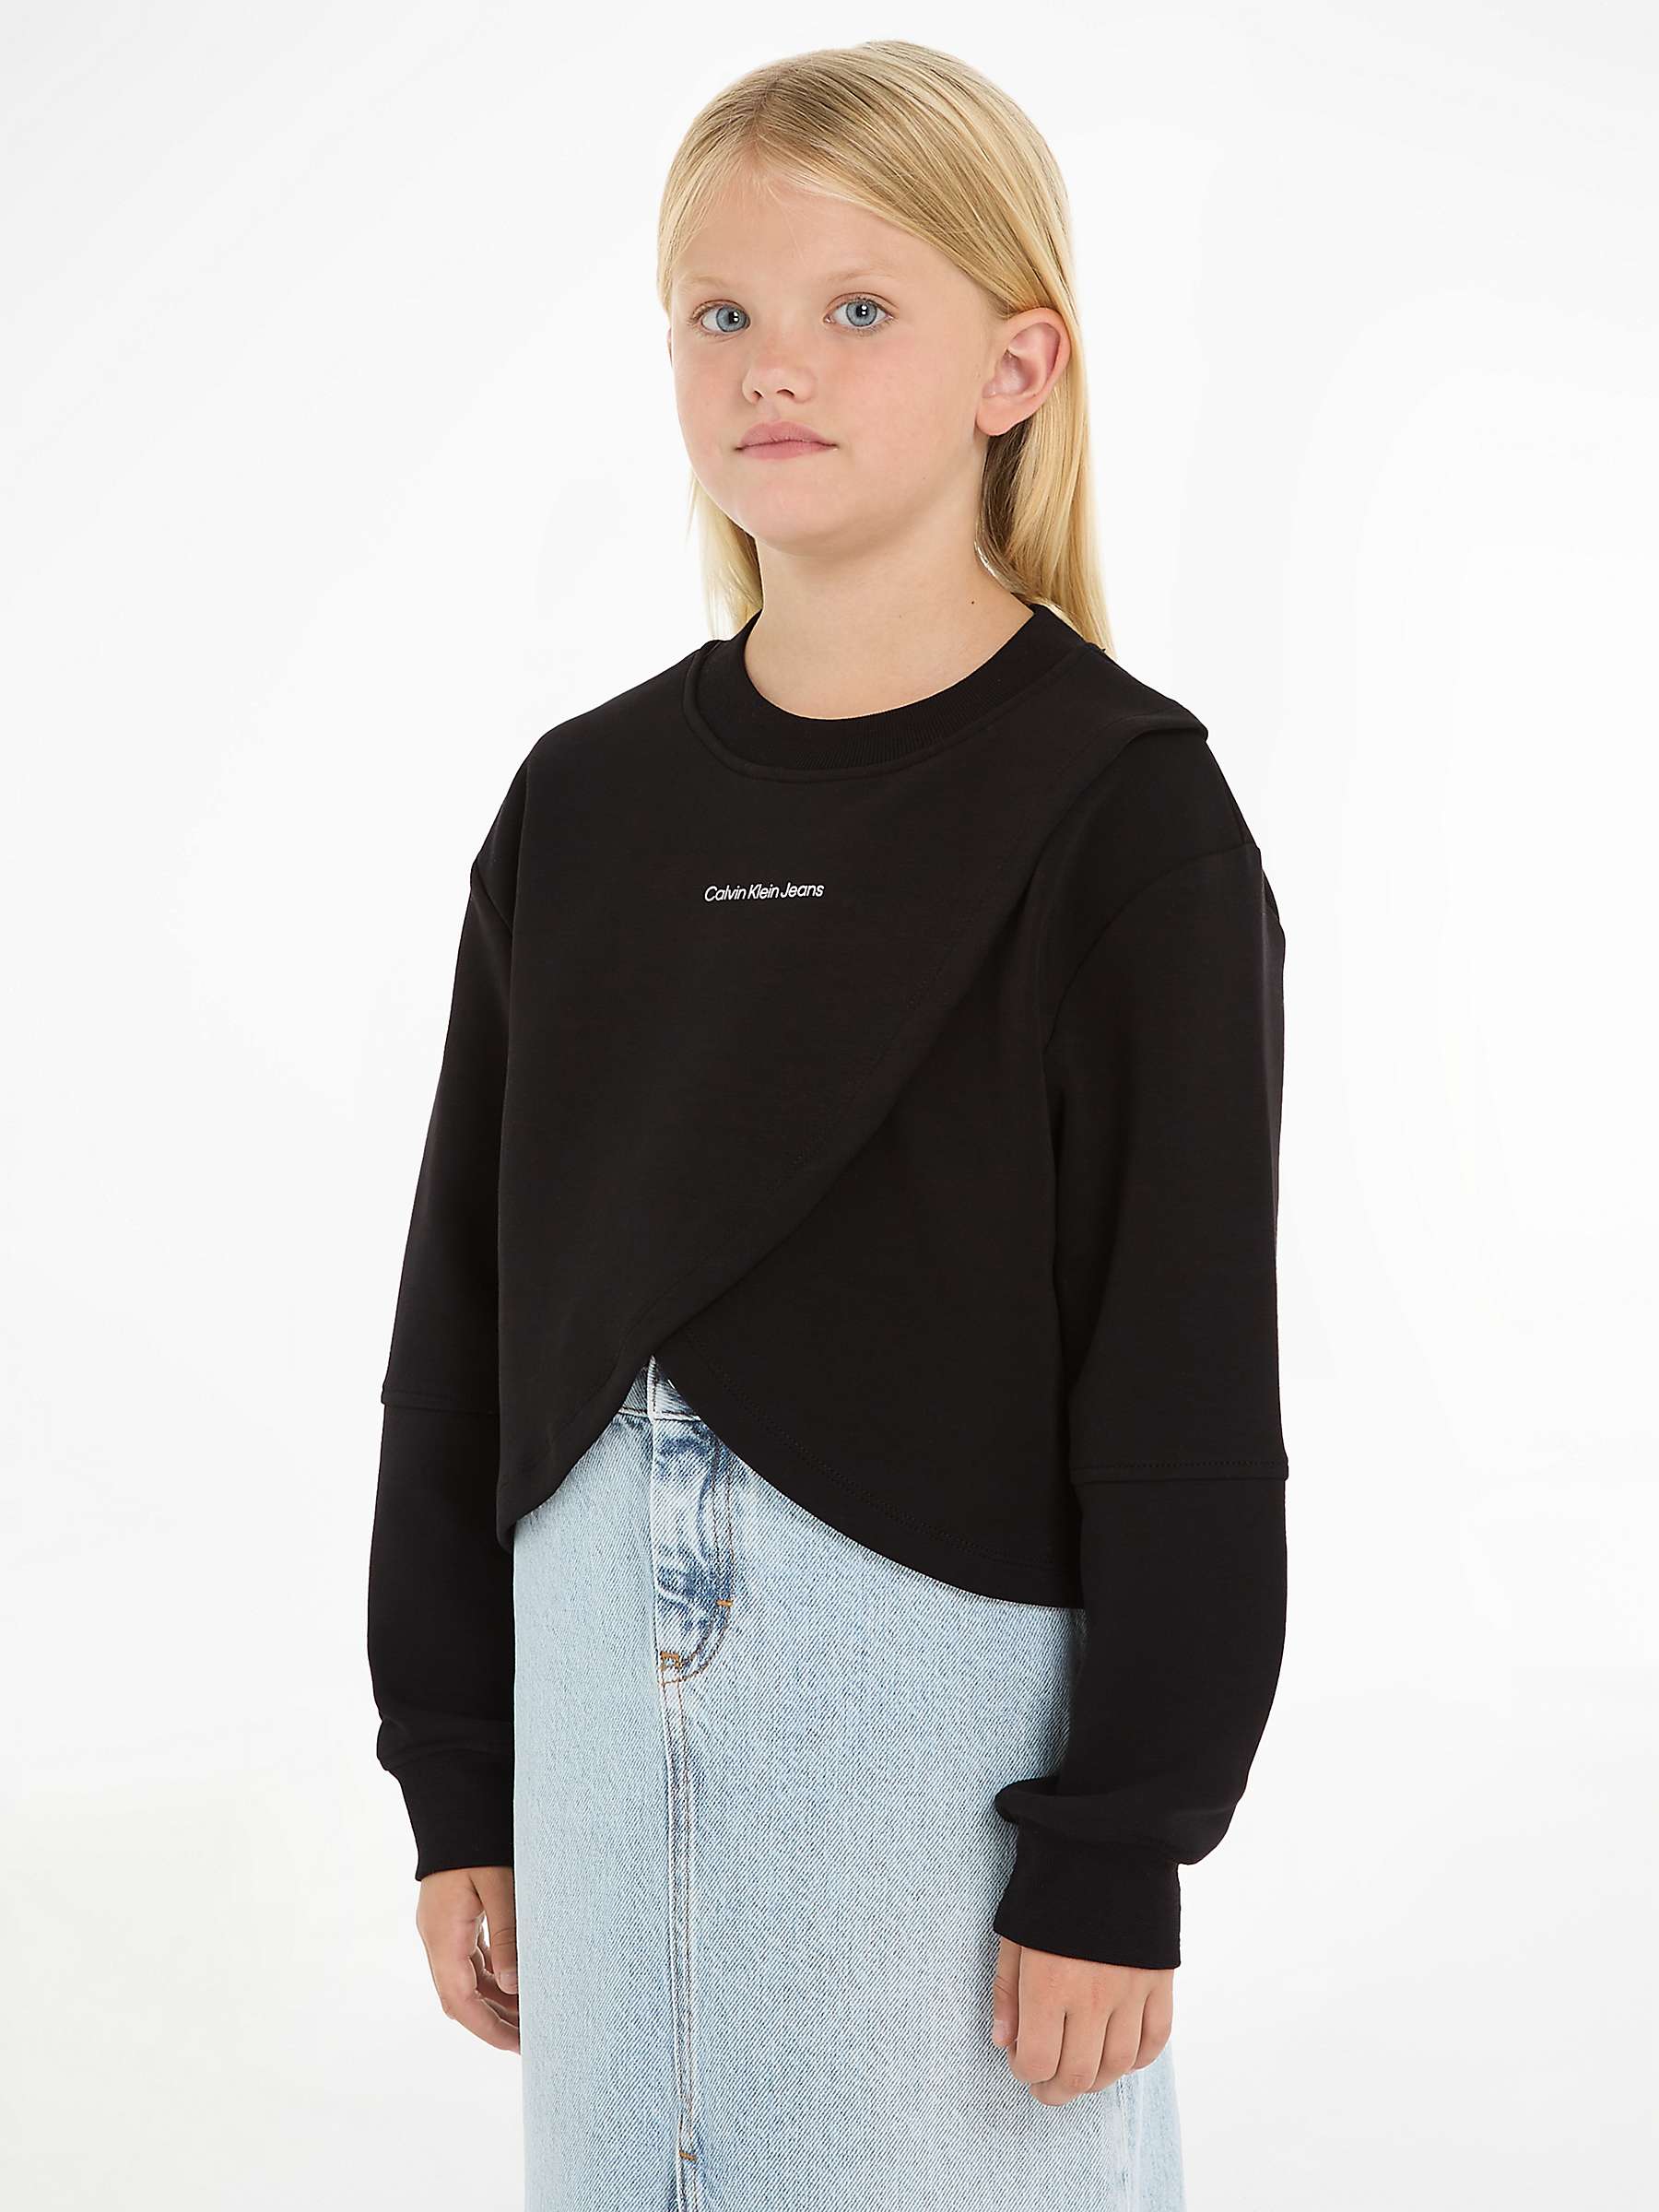 Buy Calvin Klein Kids' CK Boxy Cross Over Sweatshirt, Ck Black Online at johnlewis.com